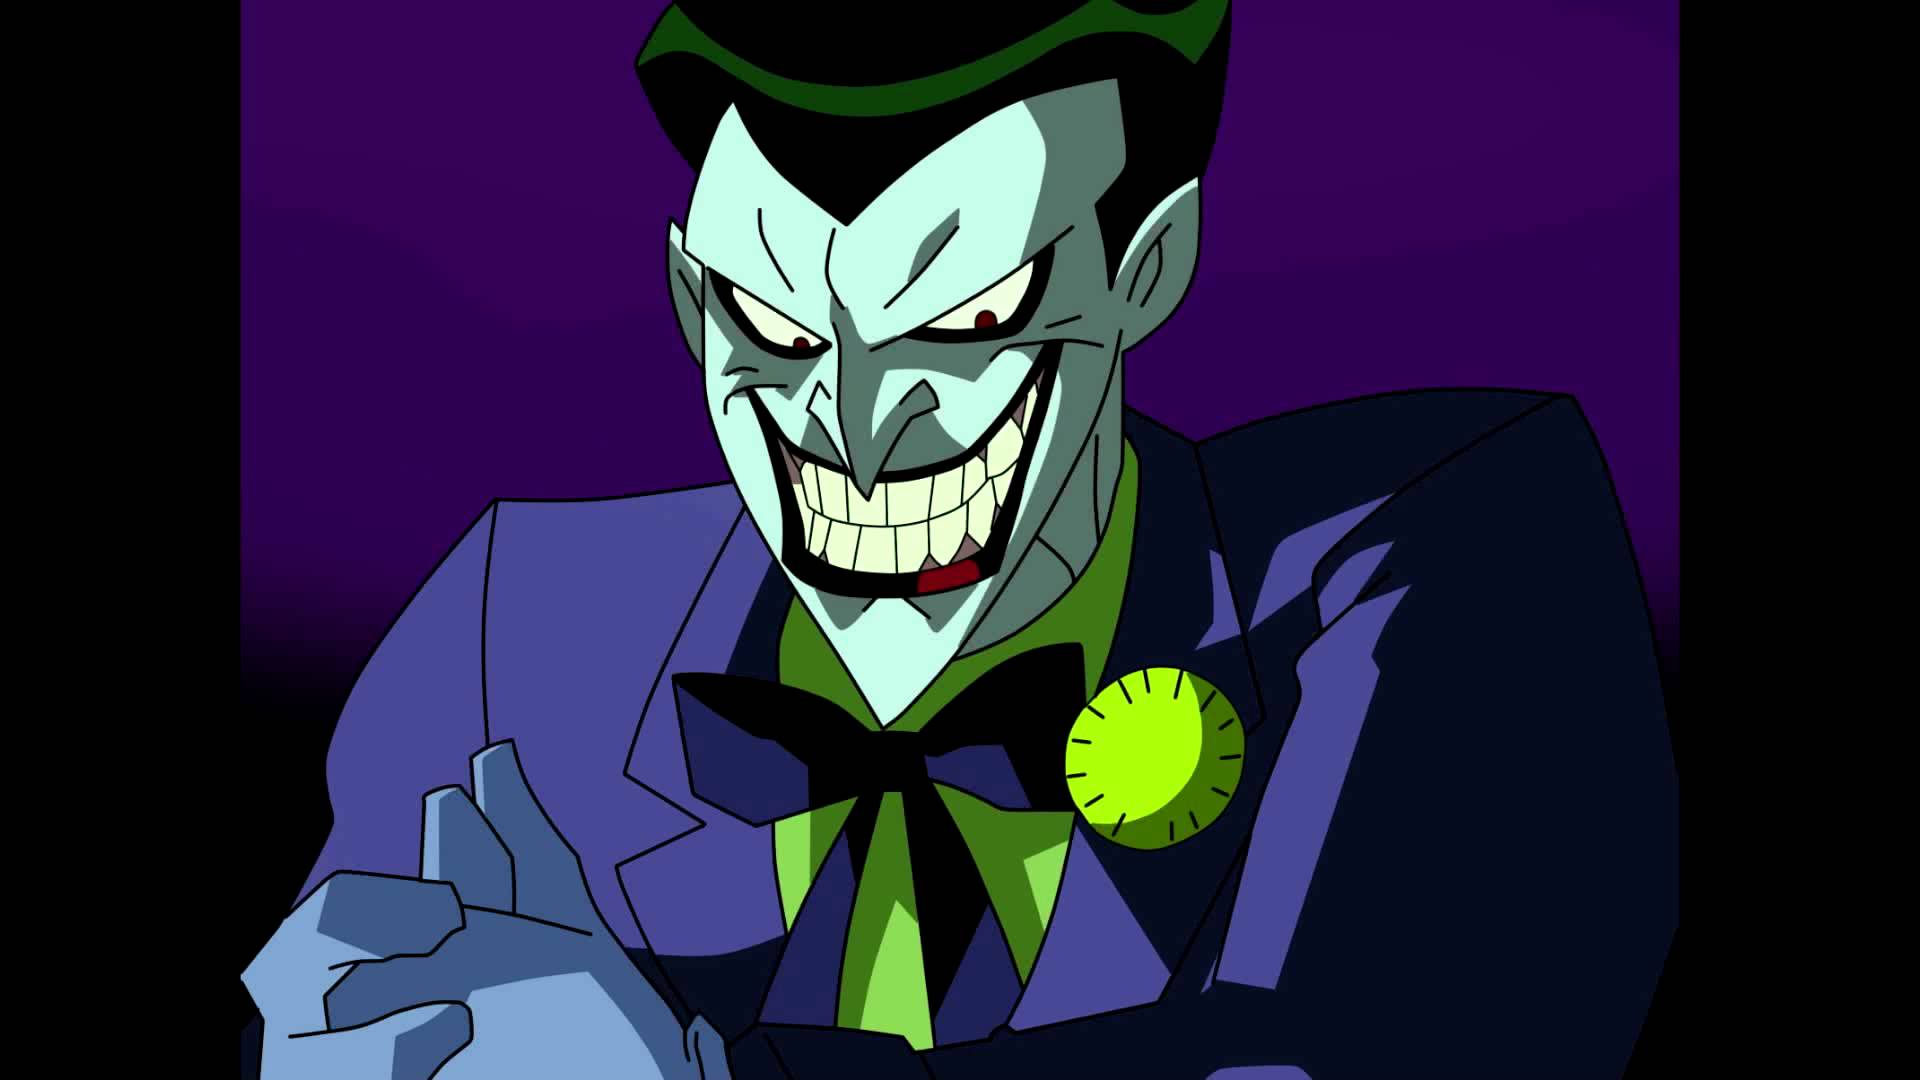 High Quality Joker: "Not a real clown?" Blank Meme Template